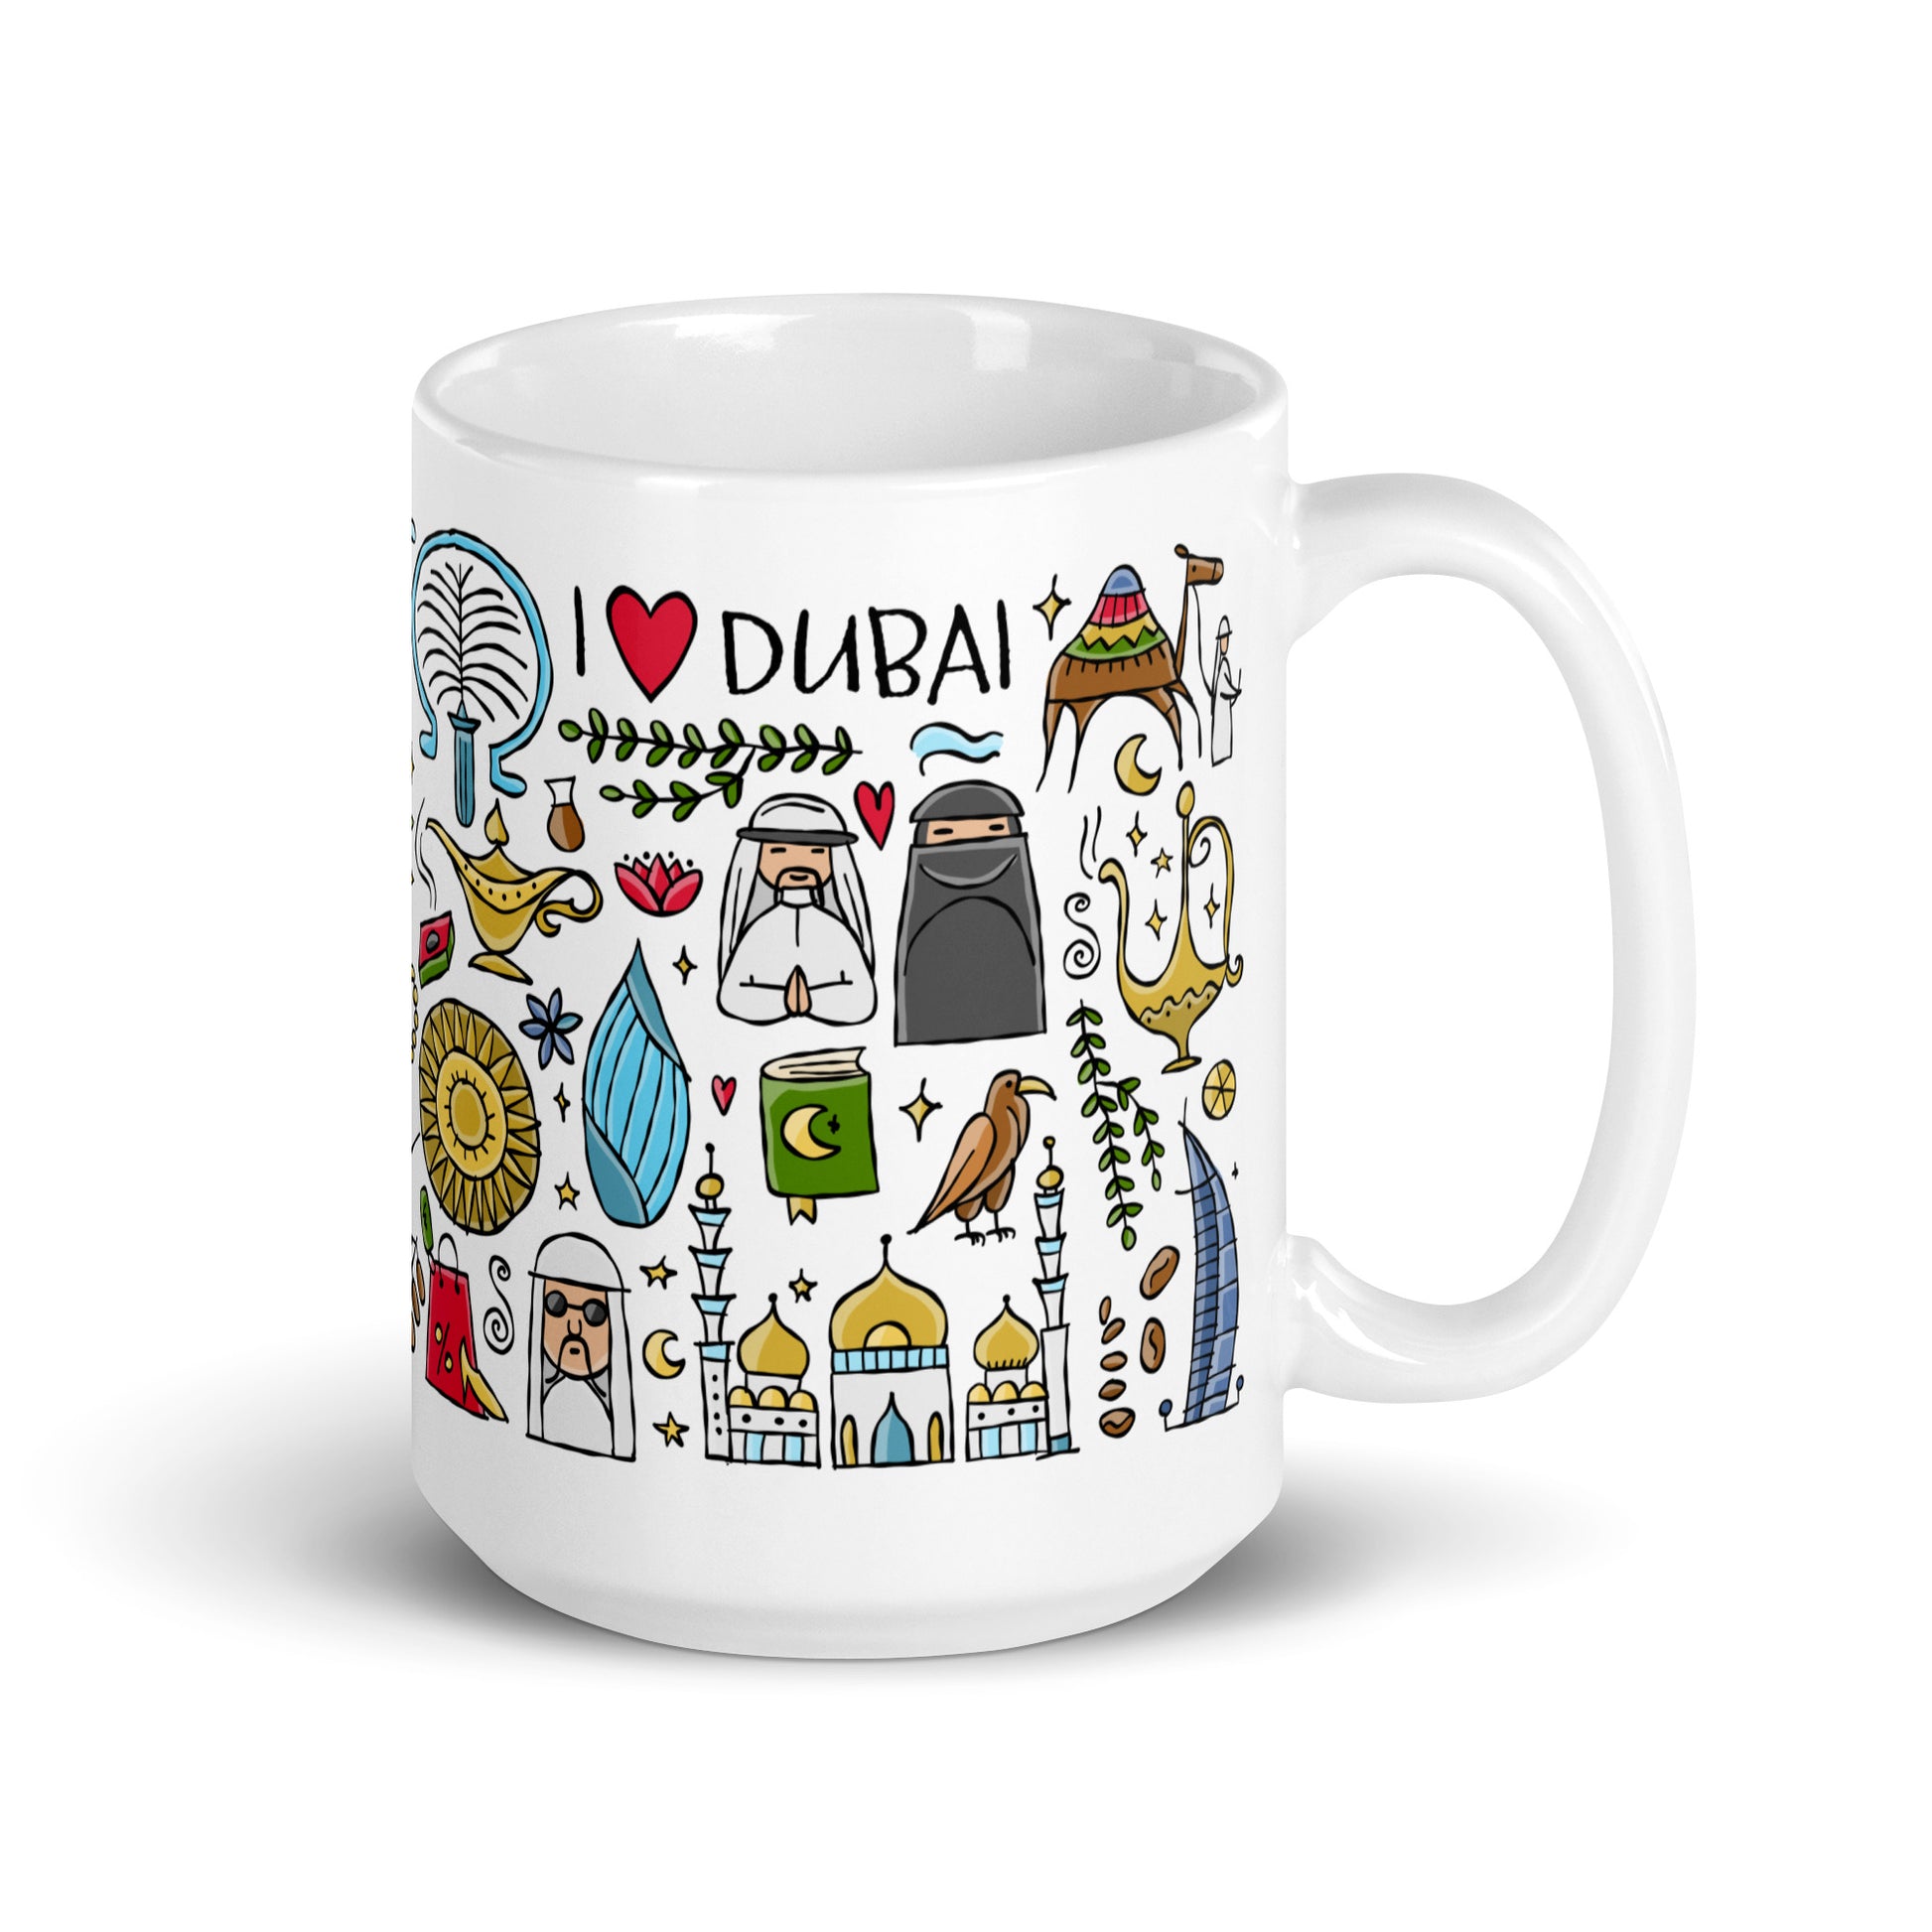 White ceramic Gift mug 15 oz with designer print Dubai UAE country 